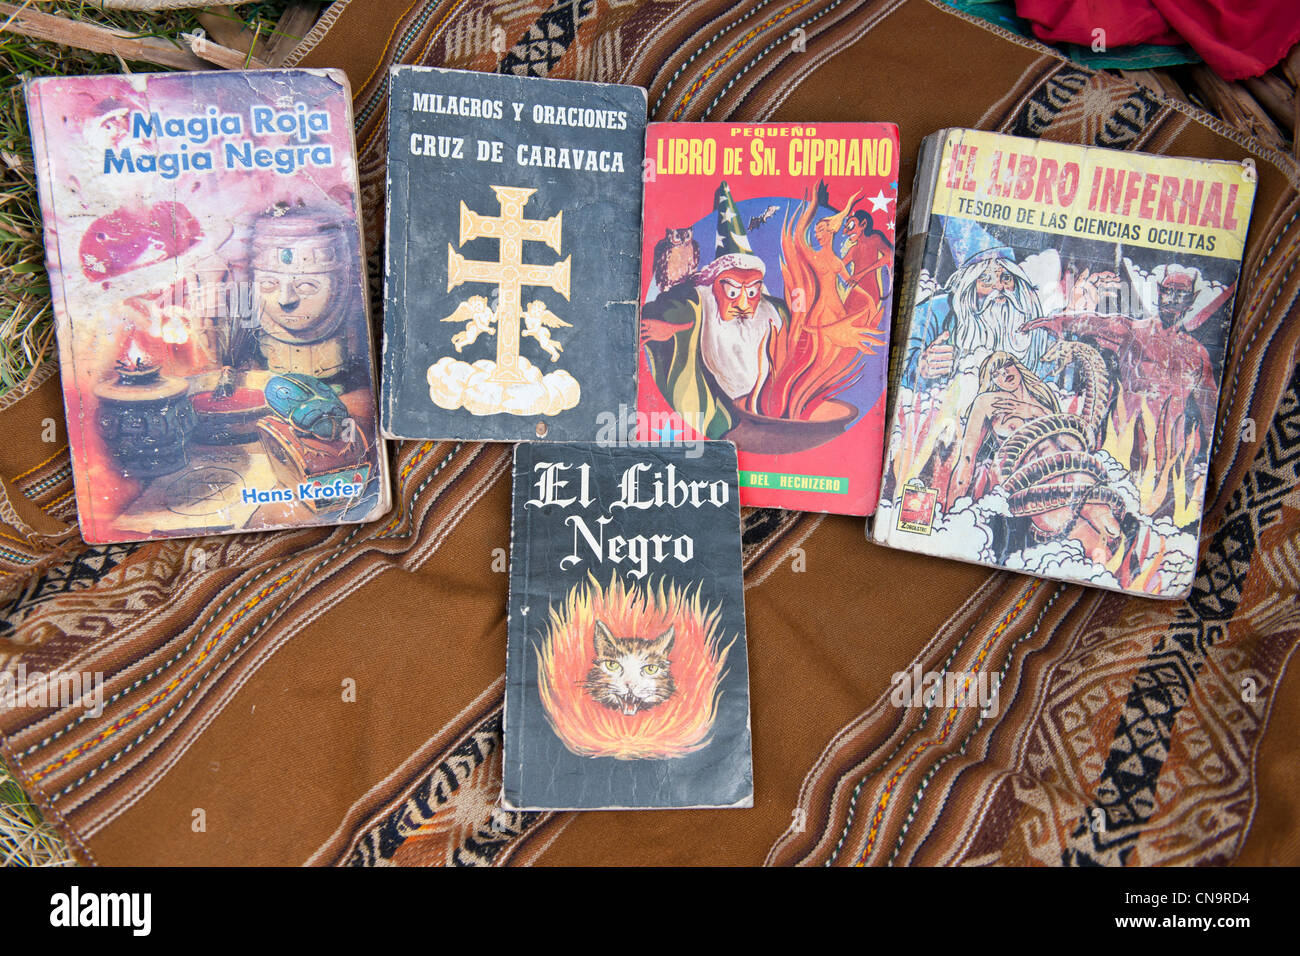 Le Pérou, Cuzco province, Huasao, répertorié comme mystic village touristique, des livres pour les rituels des chamans (curanderos) Banque D'Images